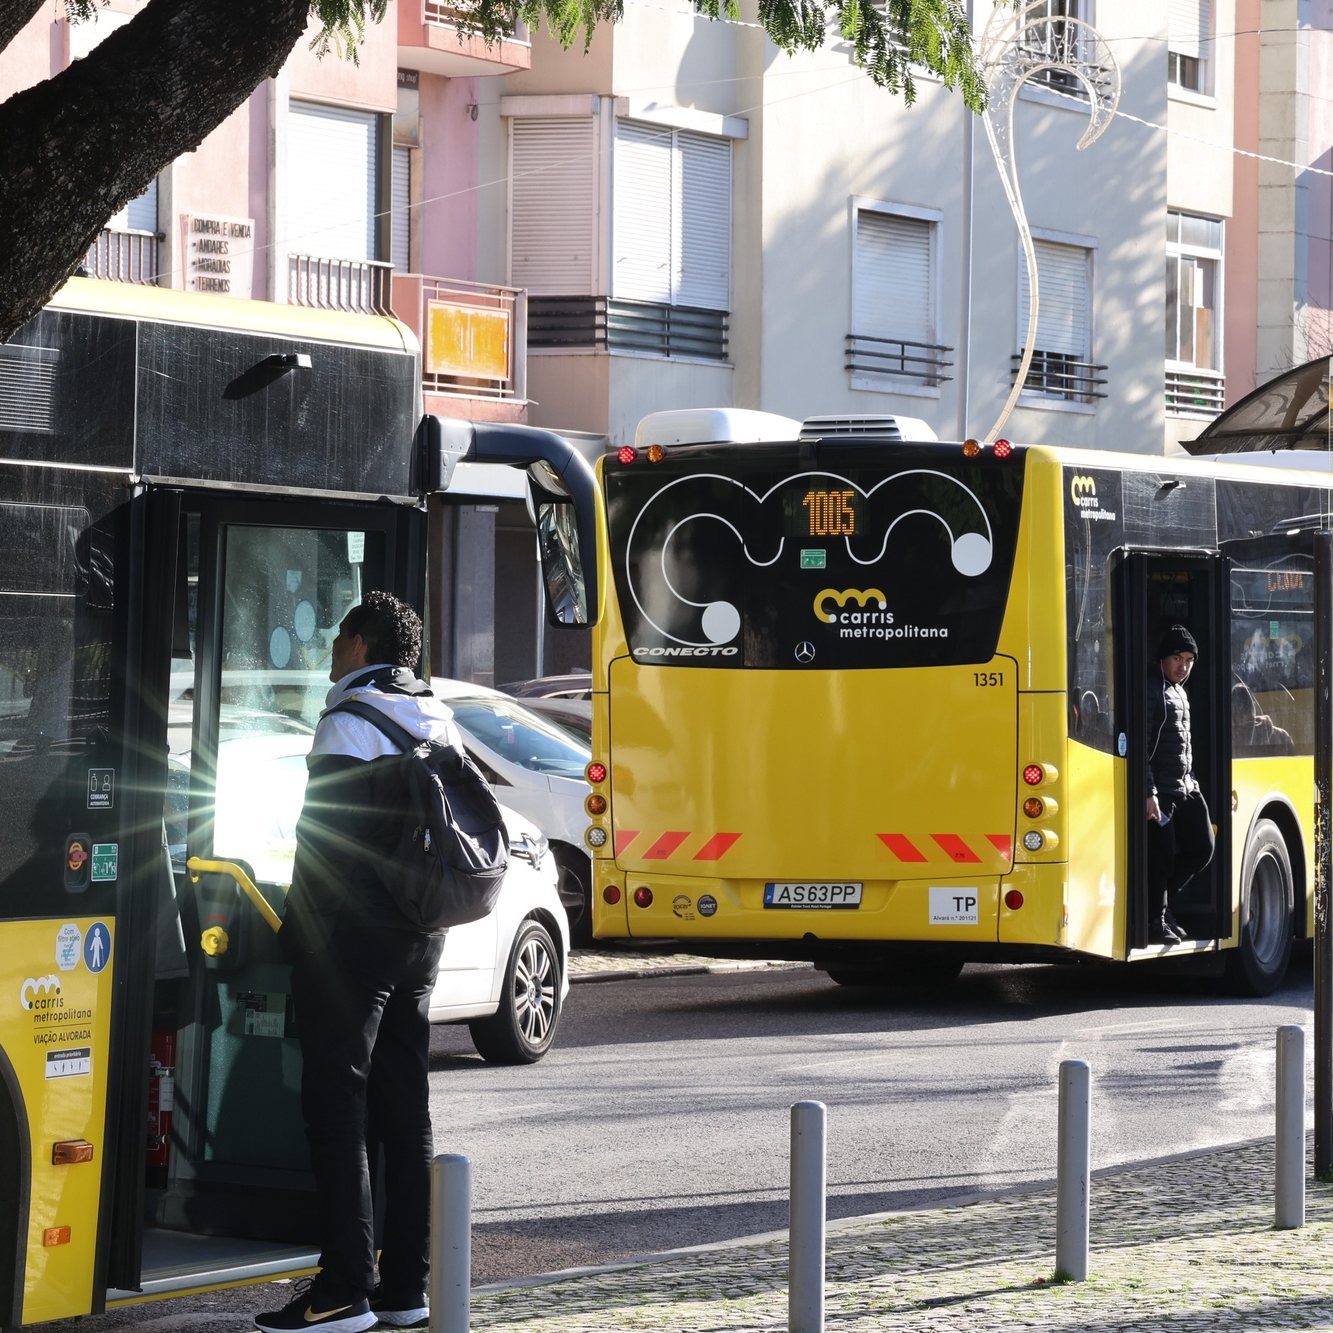 Quase duas semanas depois de a Carris Metropolitana começar, no distrito de Lisboa, os passageiros vêm mais autocarros em alguns locais, mas lamentam os atrasos constantes das carreiras e a falta de horários fora das horas de ponta, Amadora, 12 de janeiro de 2023. ANTÓNIO COTRIM/LUSA